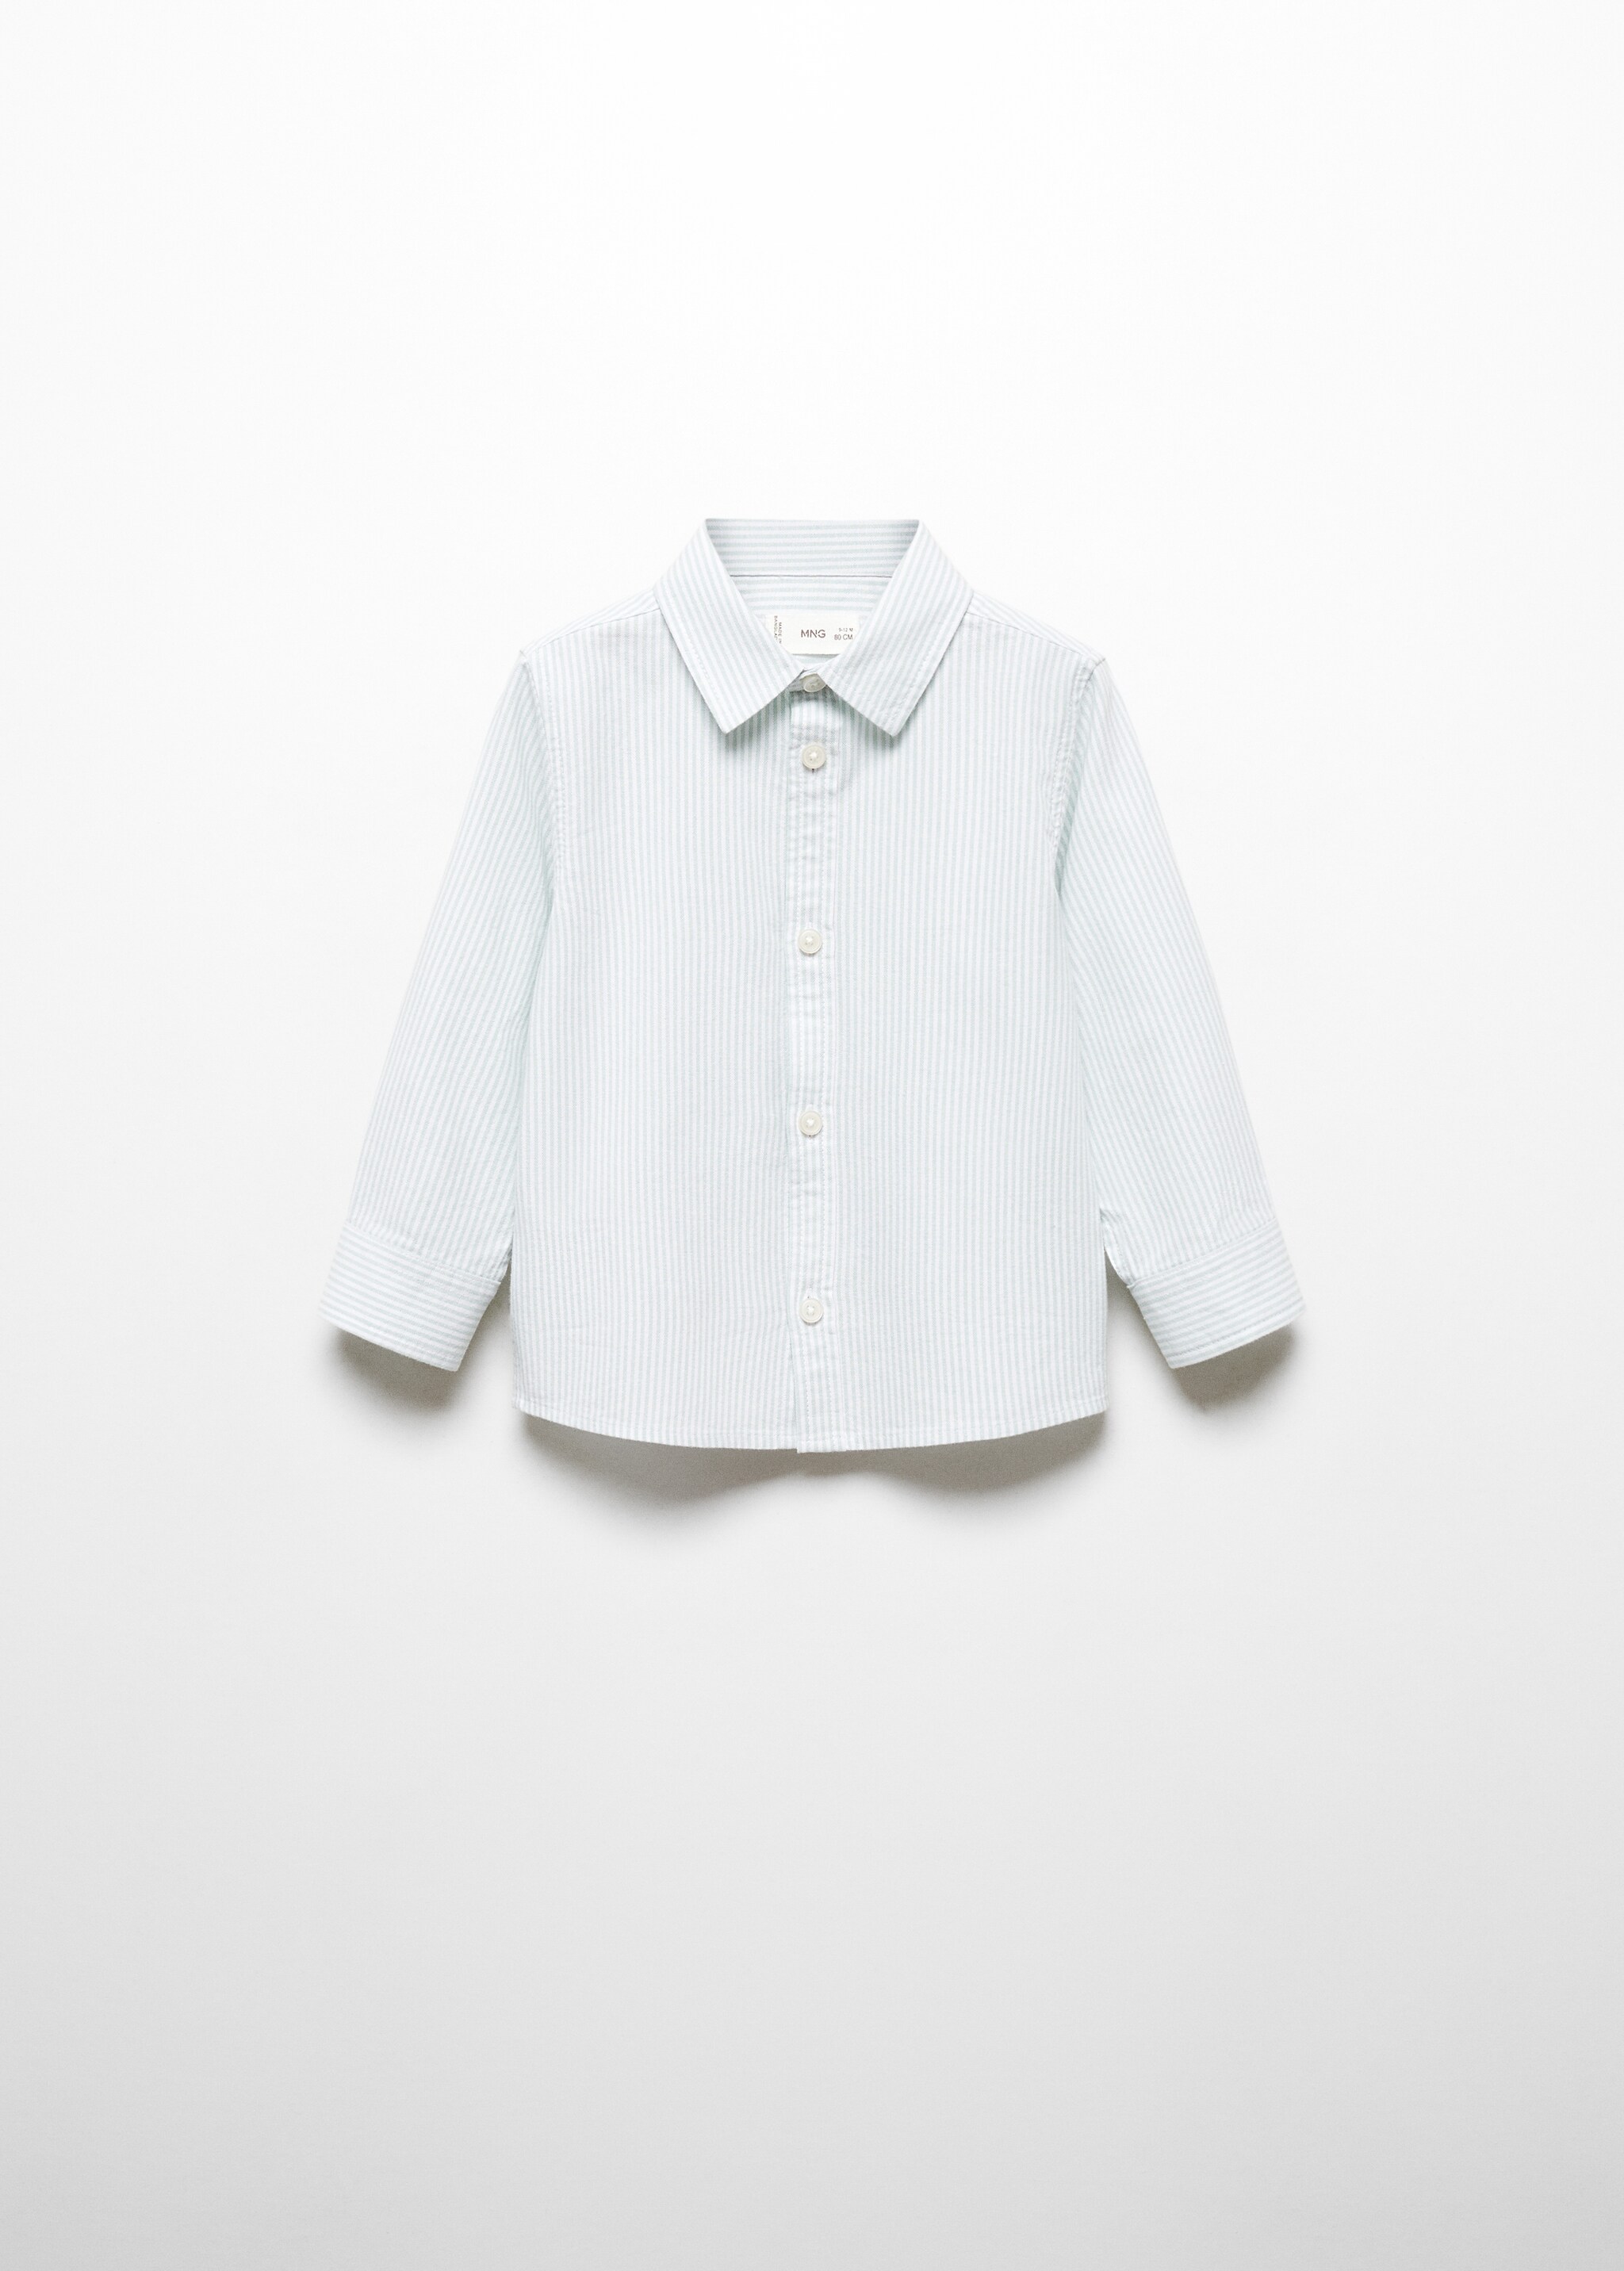 Хлопковая рубашка оксфорд - Изделие без модели